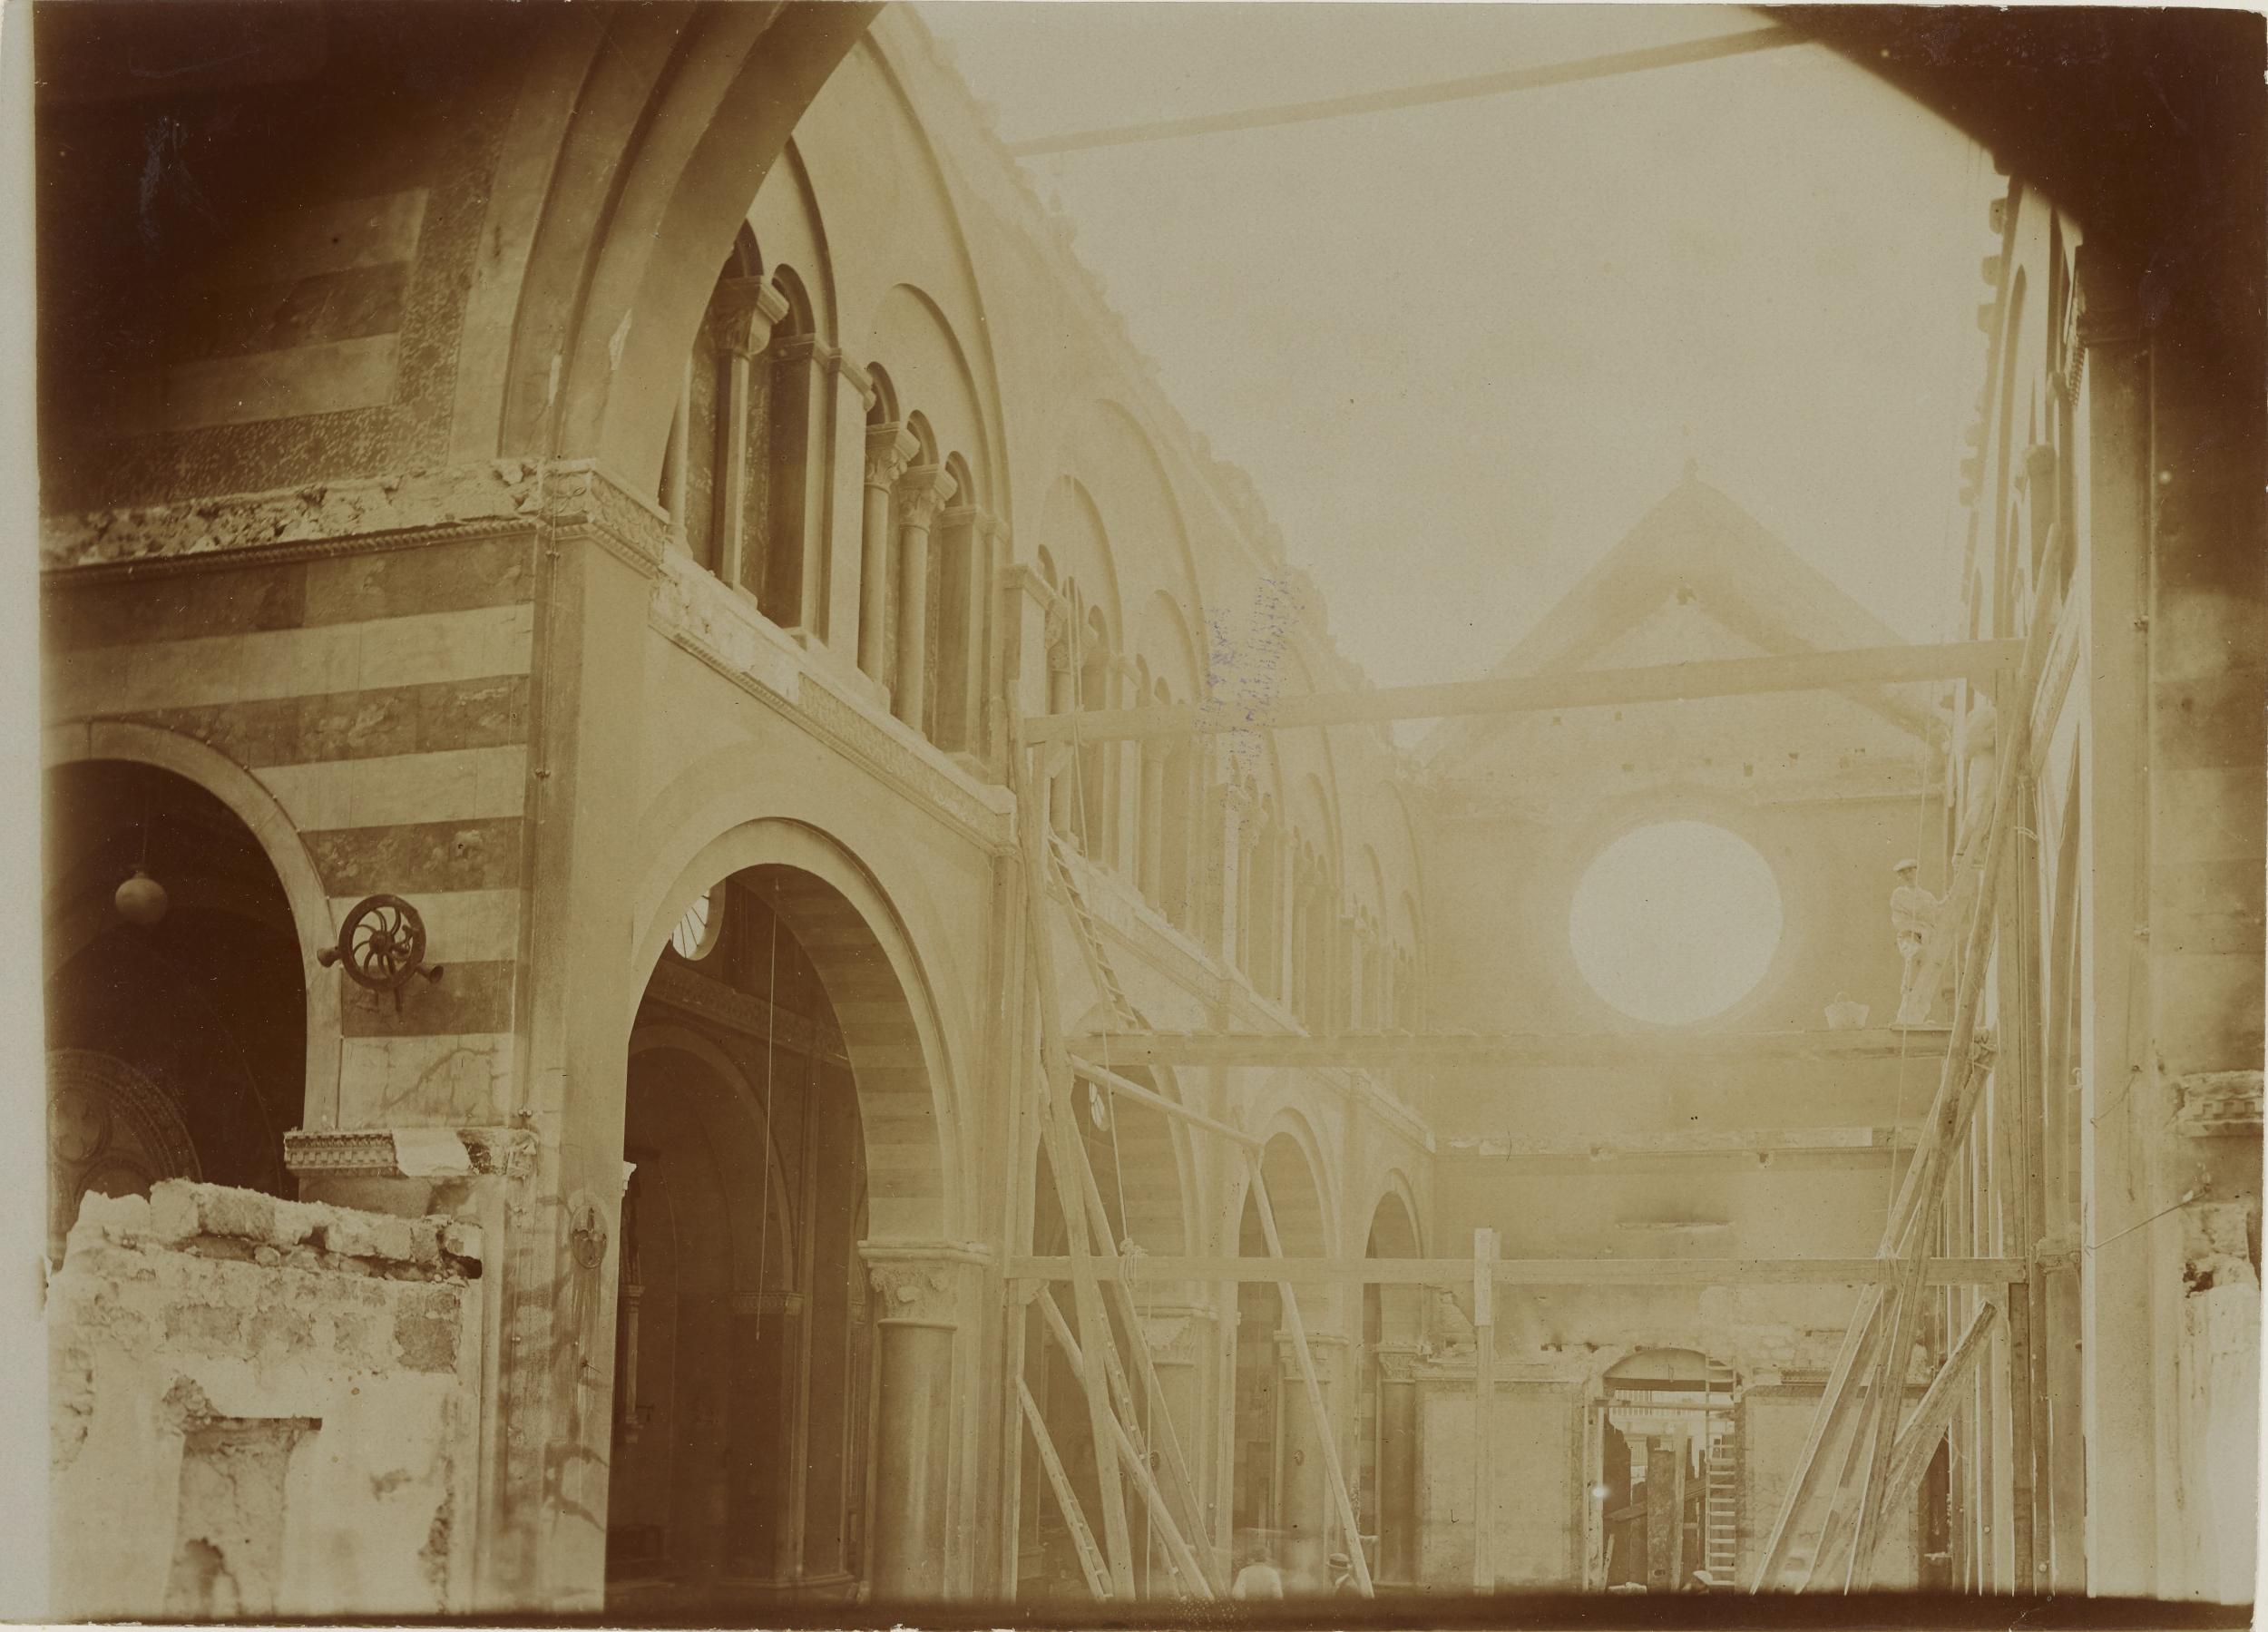 Fotografo non identificato, Conversano - Cattedrale, interno, navata centrale, dopo incendio del 1911, 1901-1910, aristotipo, MPI155337